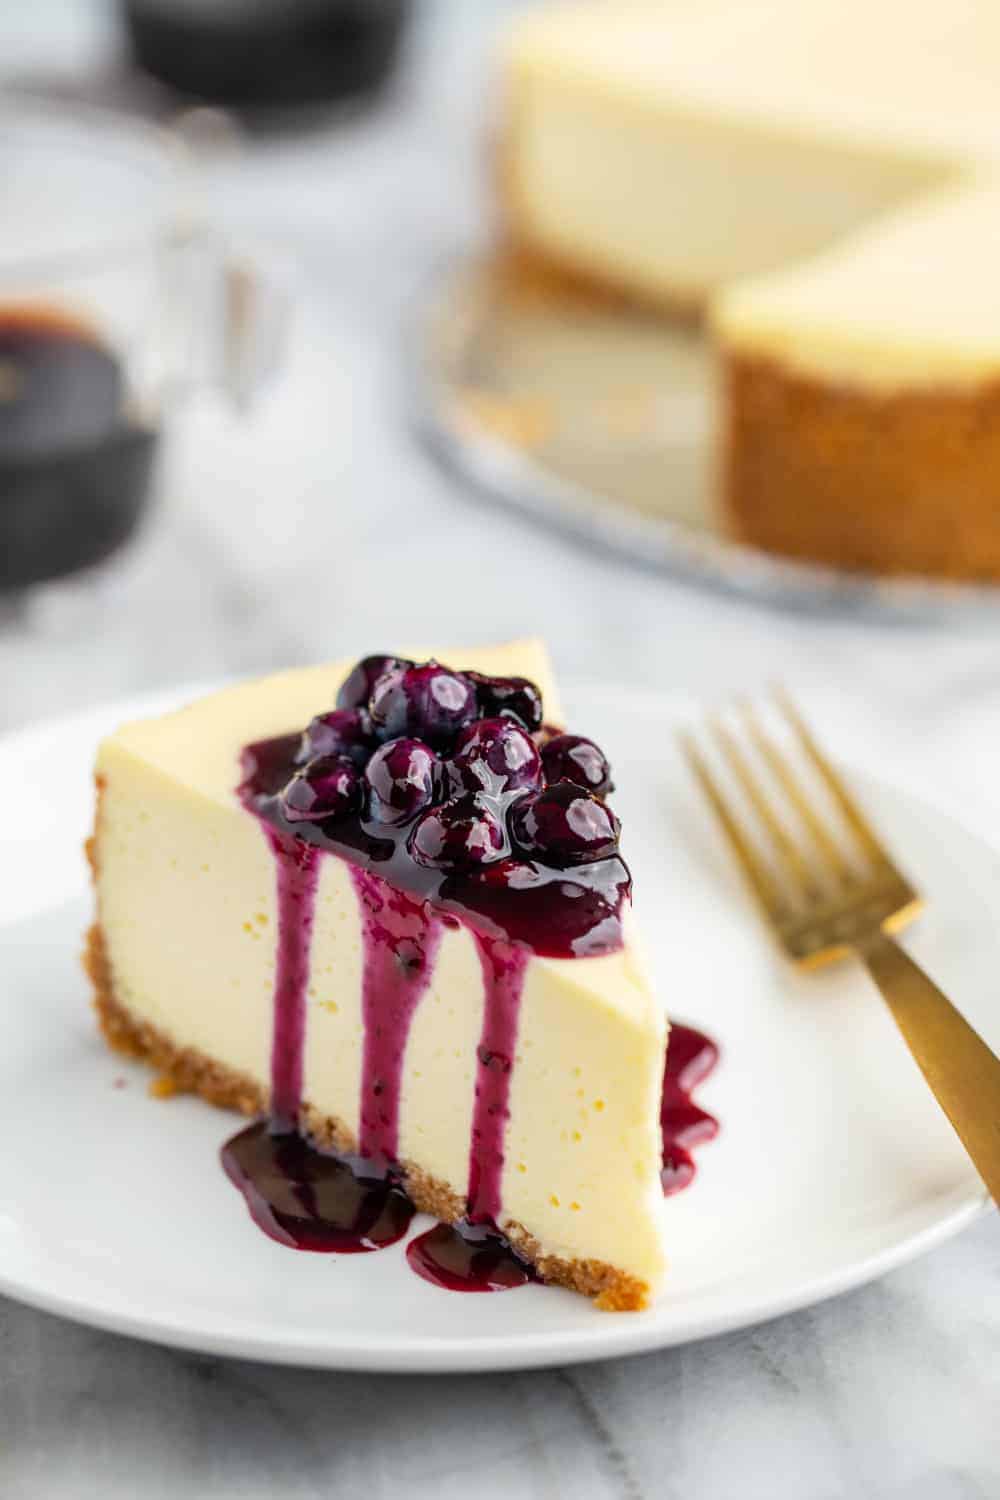 https://www.mybakingaddiction.com/wp-content/uploads/2019/07/Cheesecake-with-Blueberry-Sauce-61-of-61-1_resized.jpg